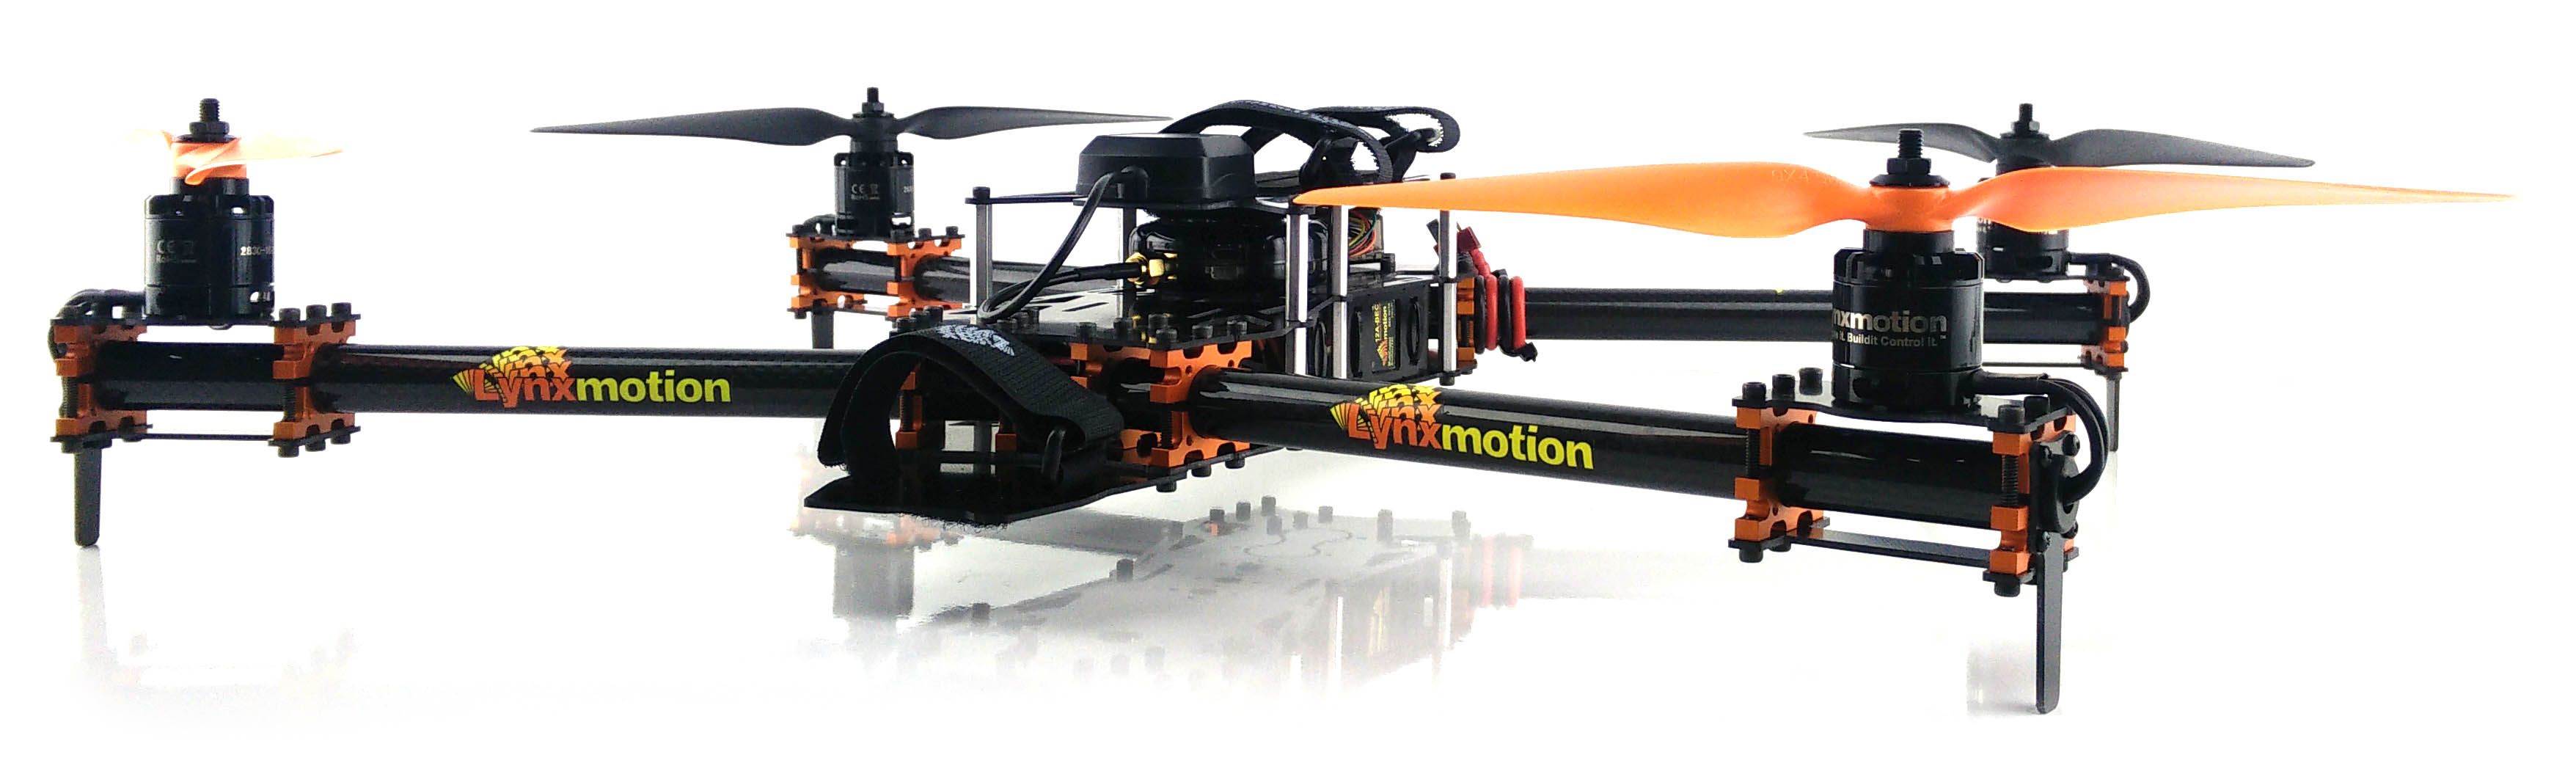 Lynxmotion HQuad500 Drone Kit  - Cliquez pour agrandir